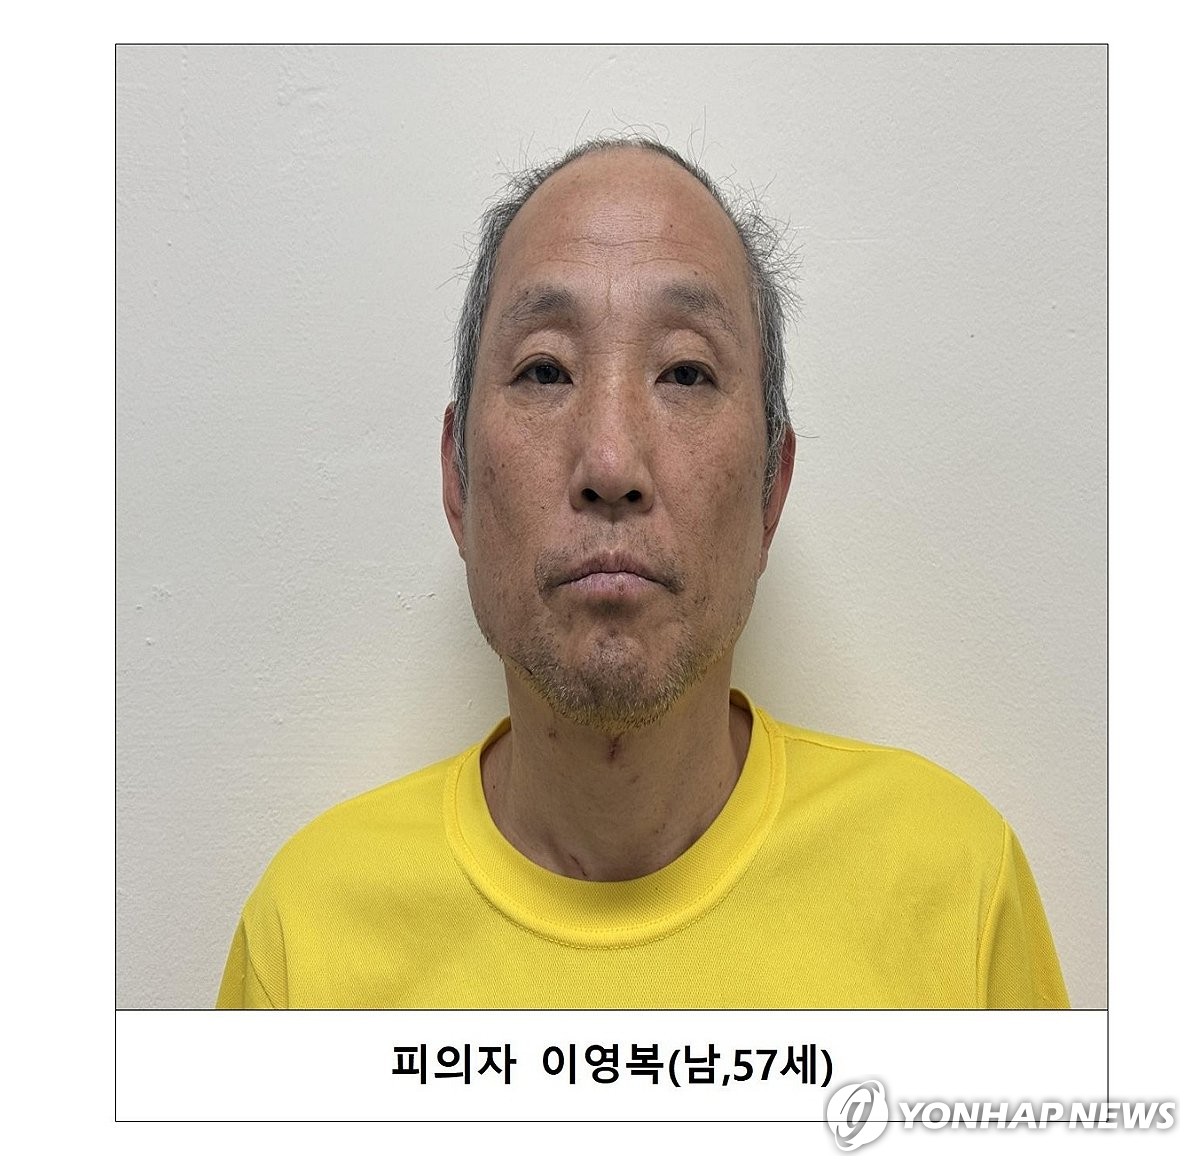 다방 업주 여성 2명 살해범은 57세 이영복…머그샷 공개(종합2보)